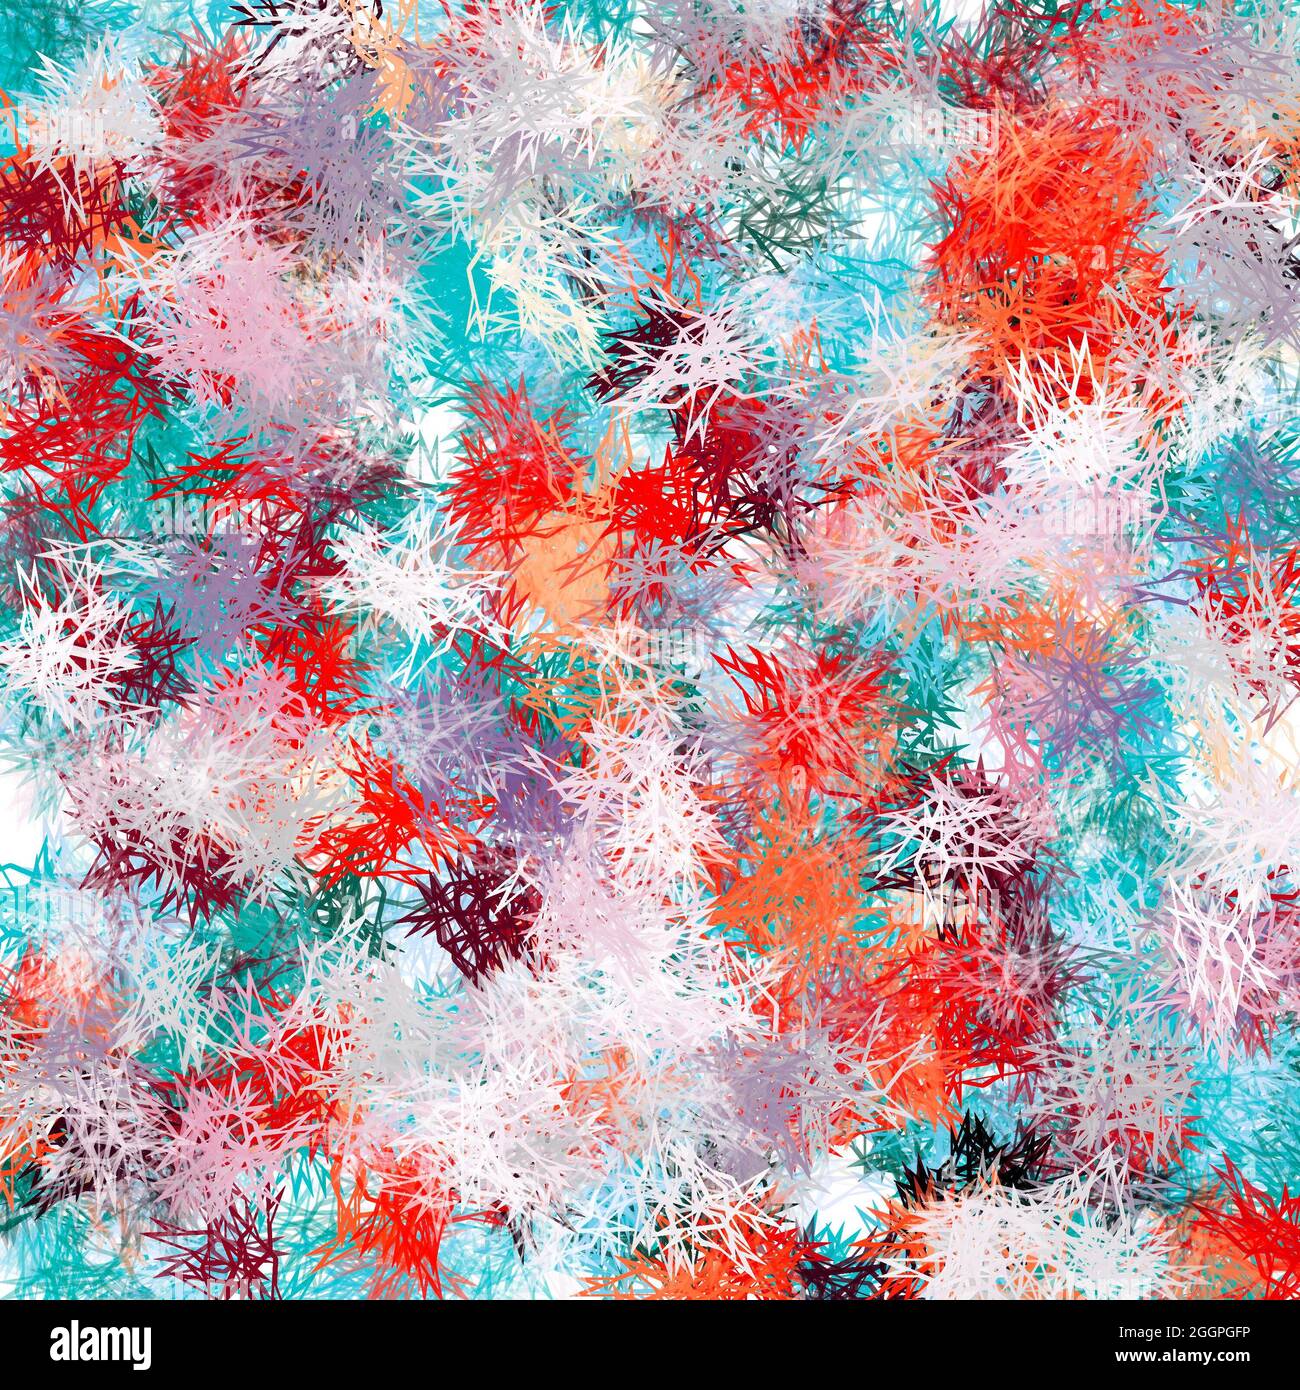 Bella astratta backround.Chaotic bushed pattern. Bianco, rosso, blu, viola e arancione. Foto Stock